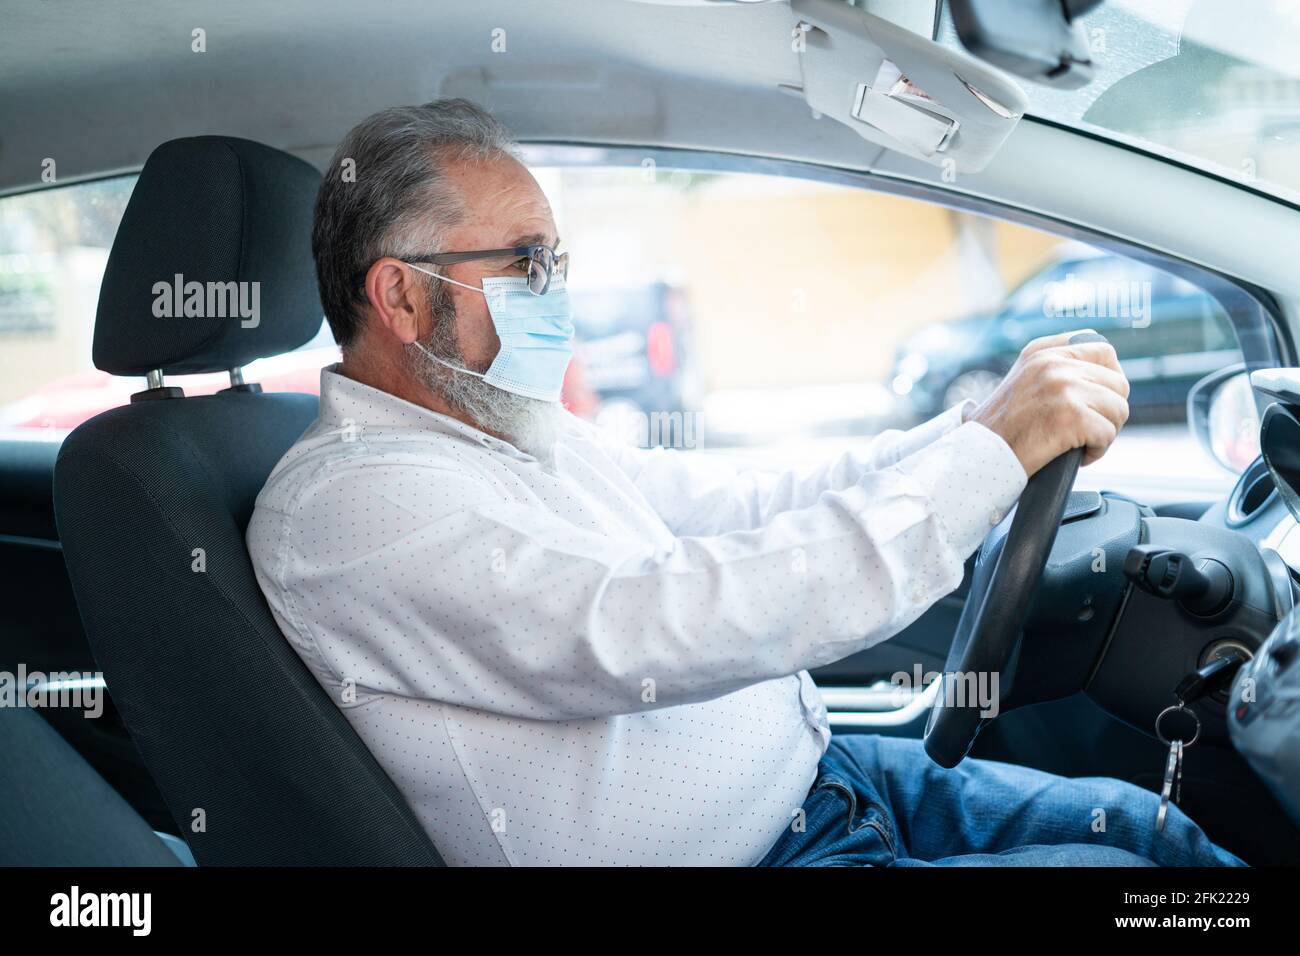 vue latérale d'un homme âgé dans un masque chirurgical médical conduisant une voiture. Concept de pandémie de coronavirus. Banque D'Images